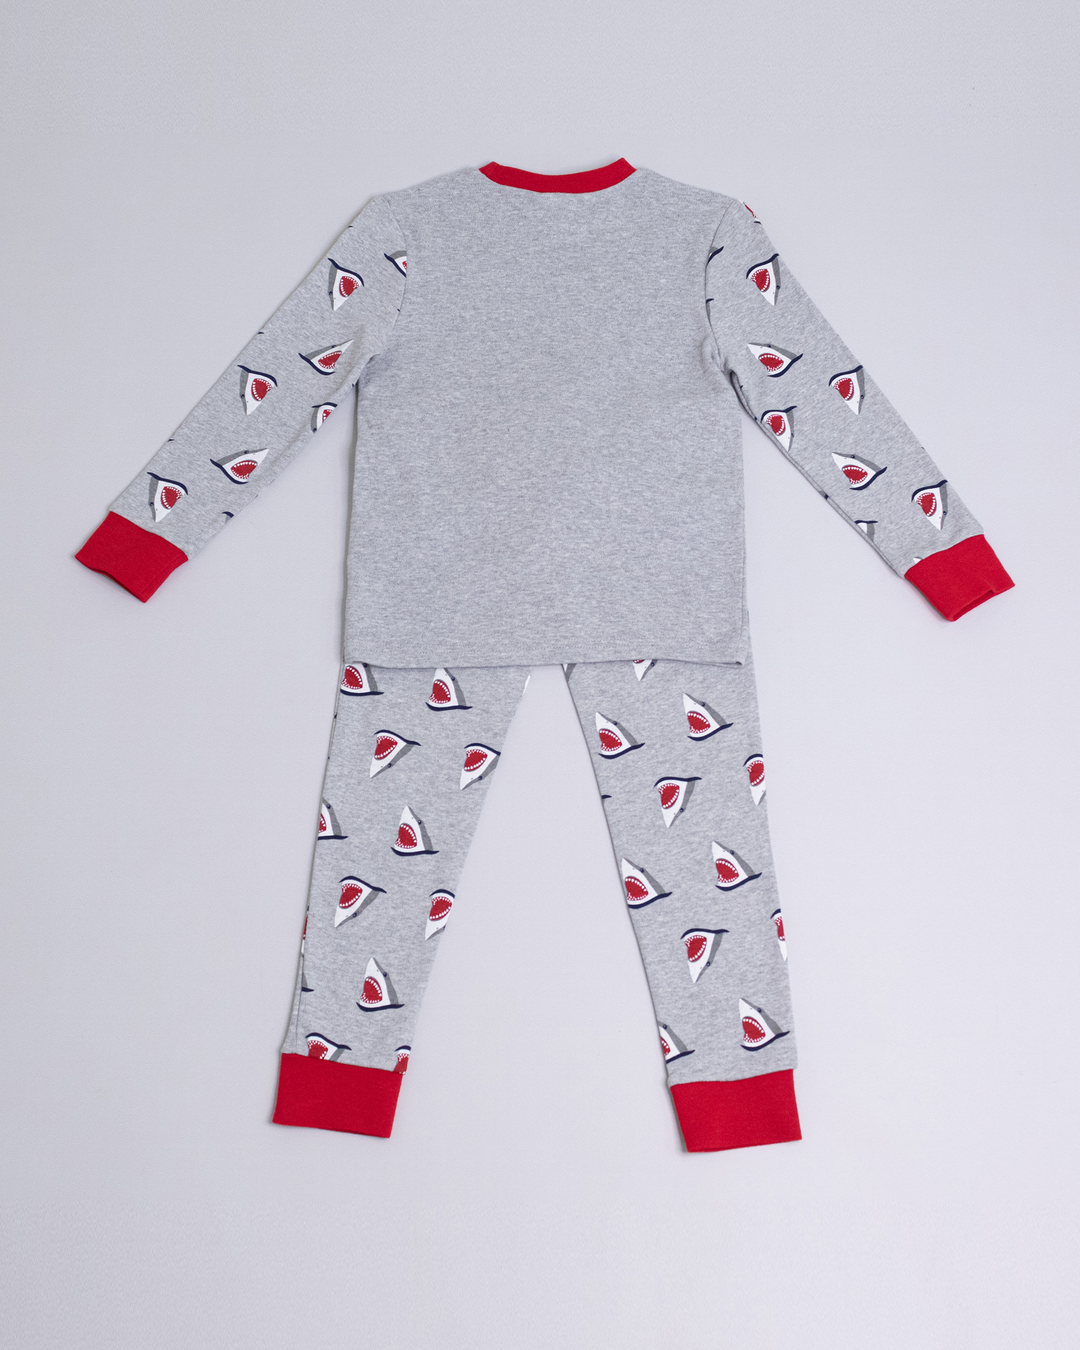 Pijama gris con gráfico de tiburón con detalles en el cuello, mangas y tobillos en rojo